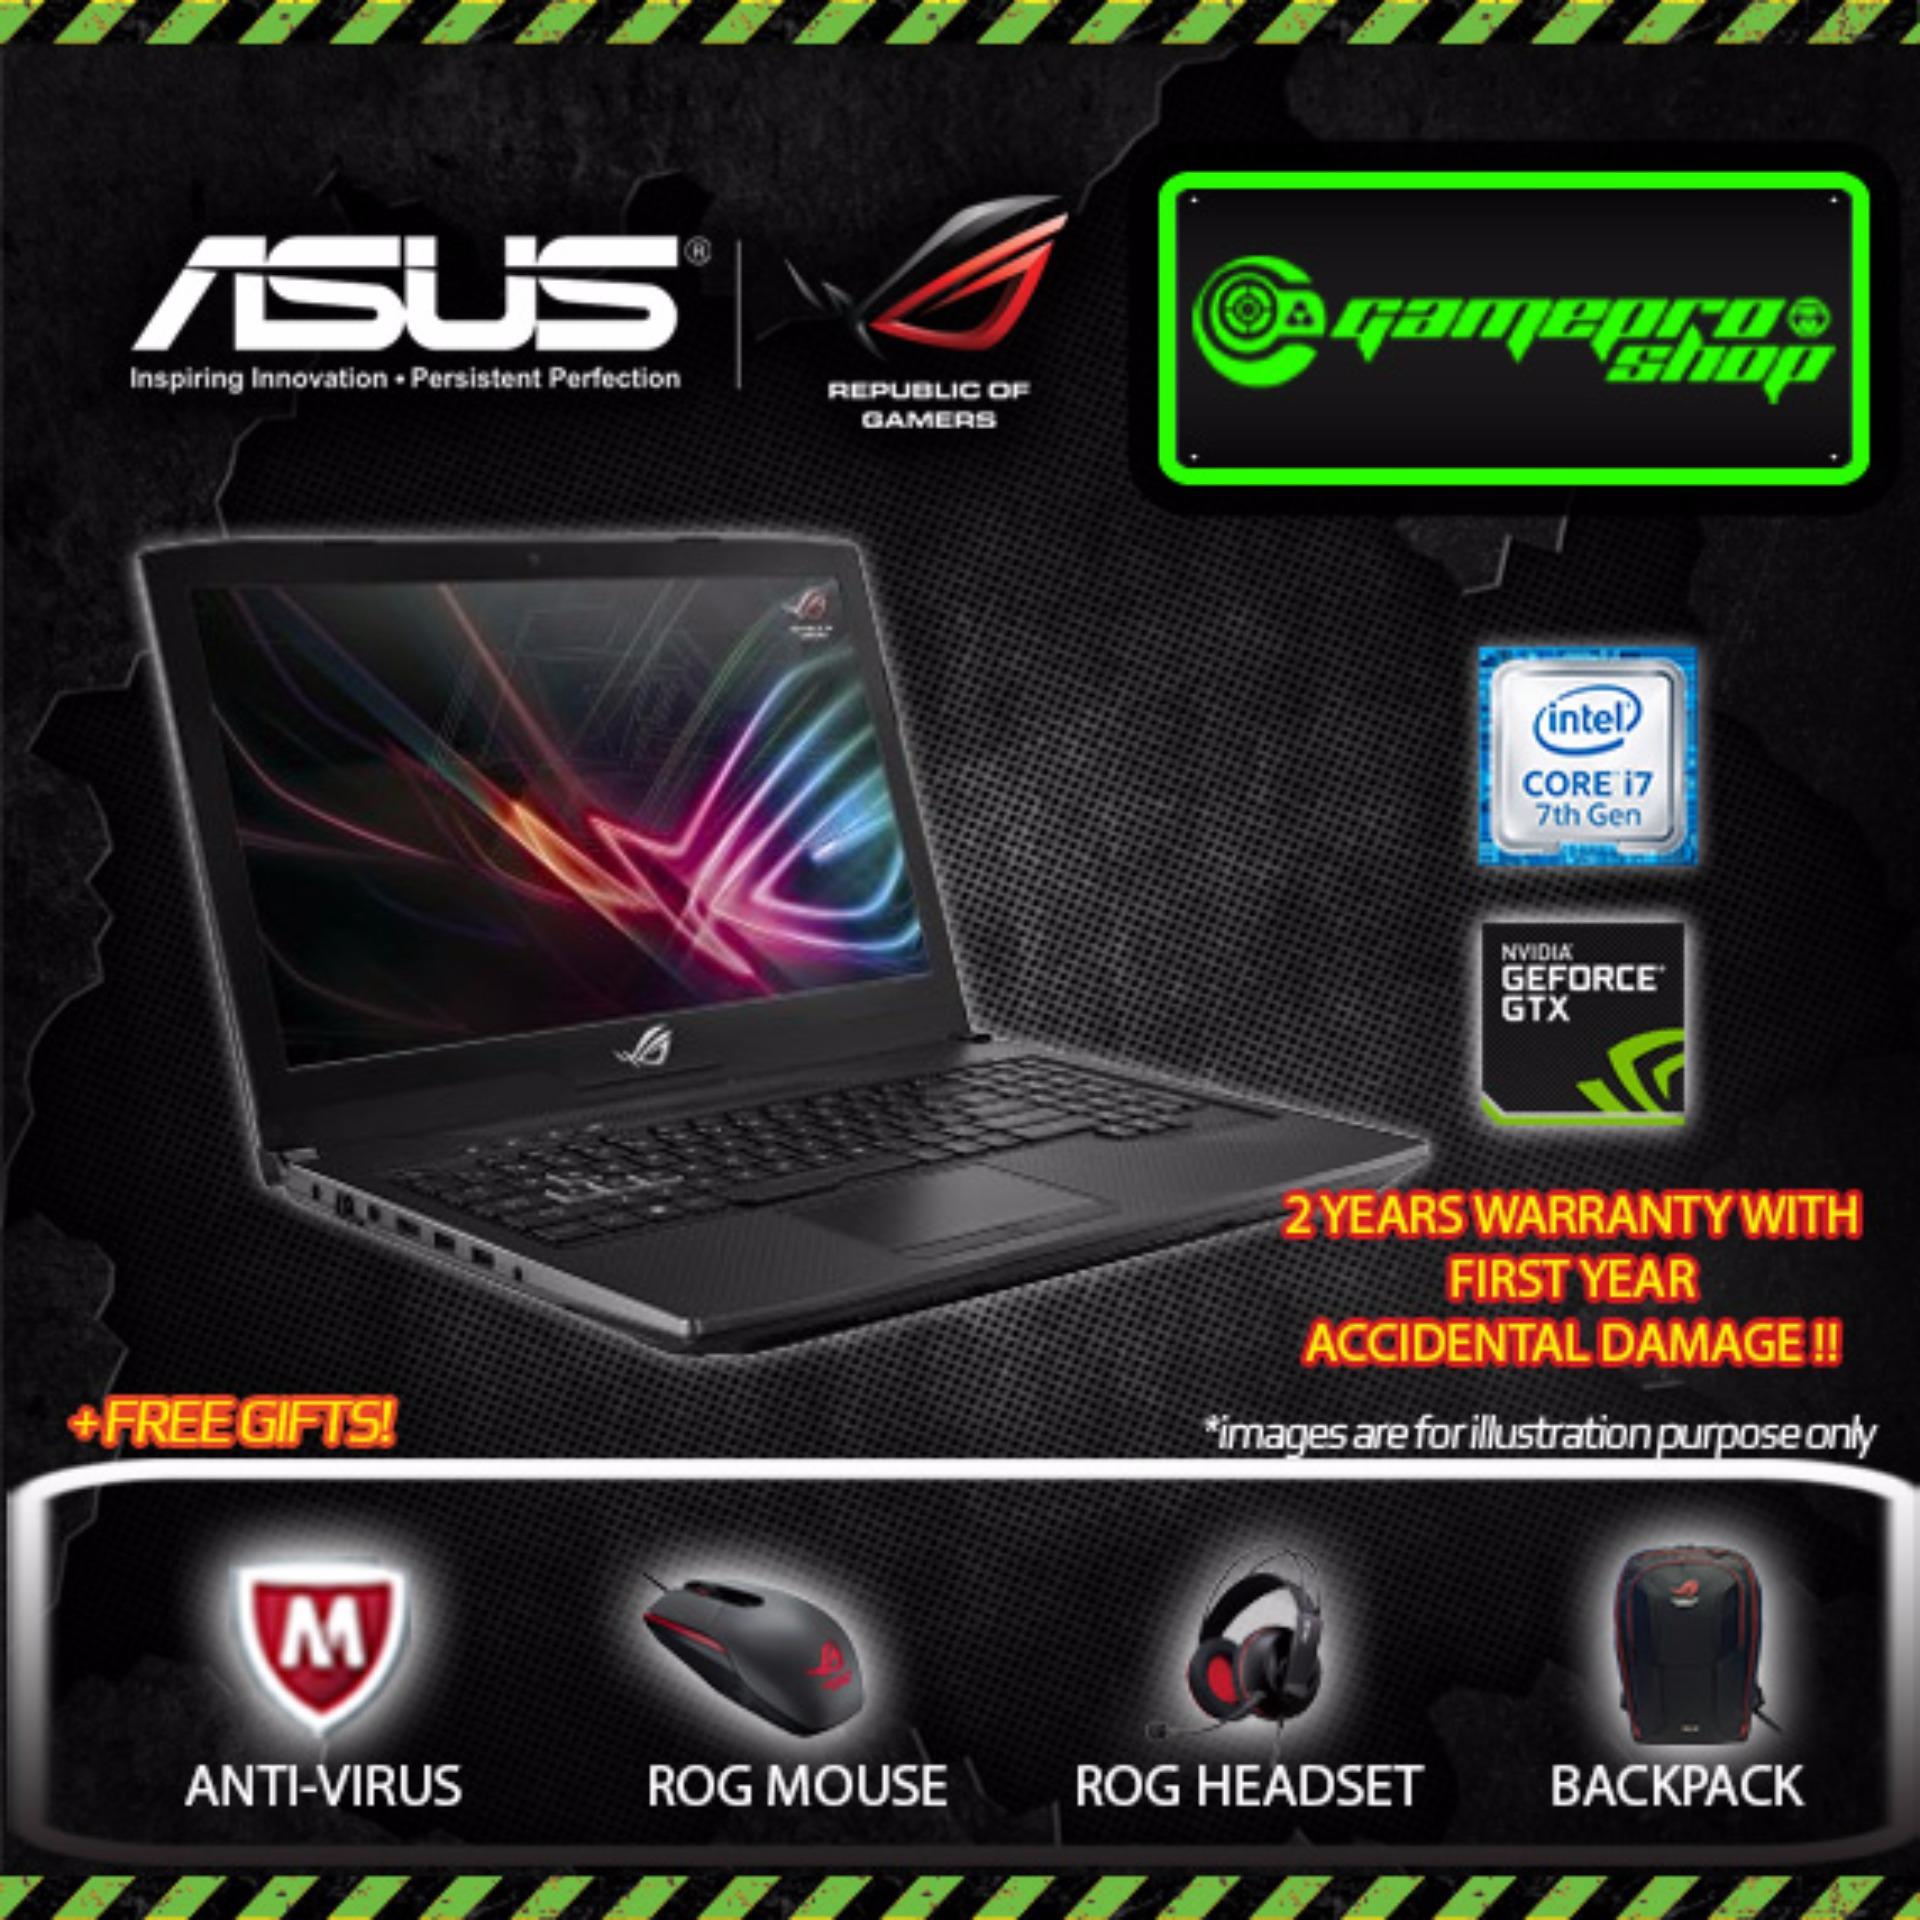 Asus ROG Strix GL503VS - EI032T (I7-7700HQ/GTX1070 8GB/256GB SSD) 15.6